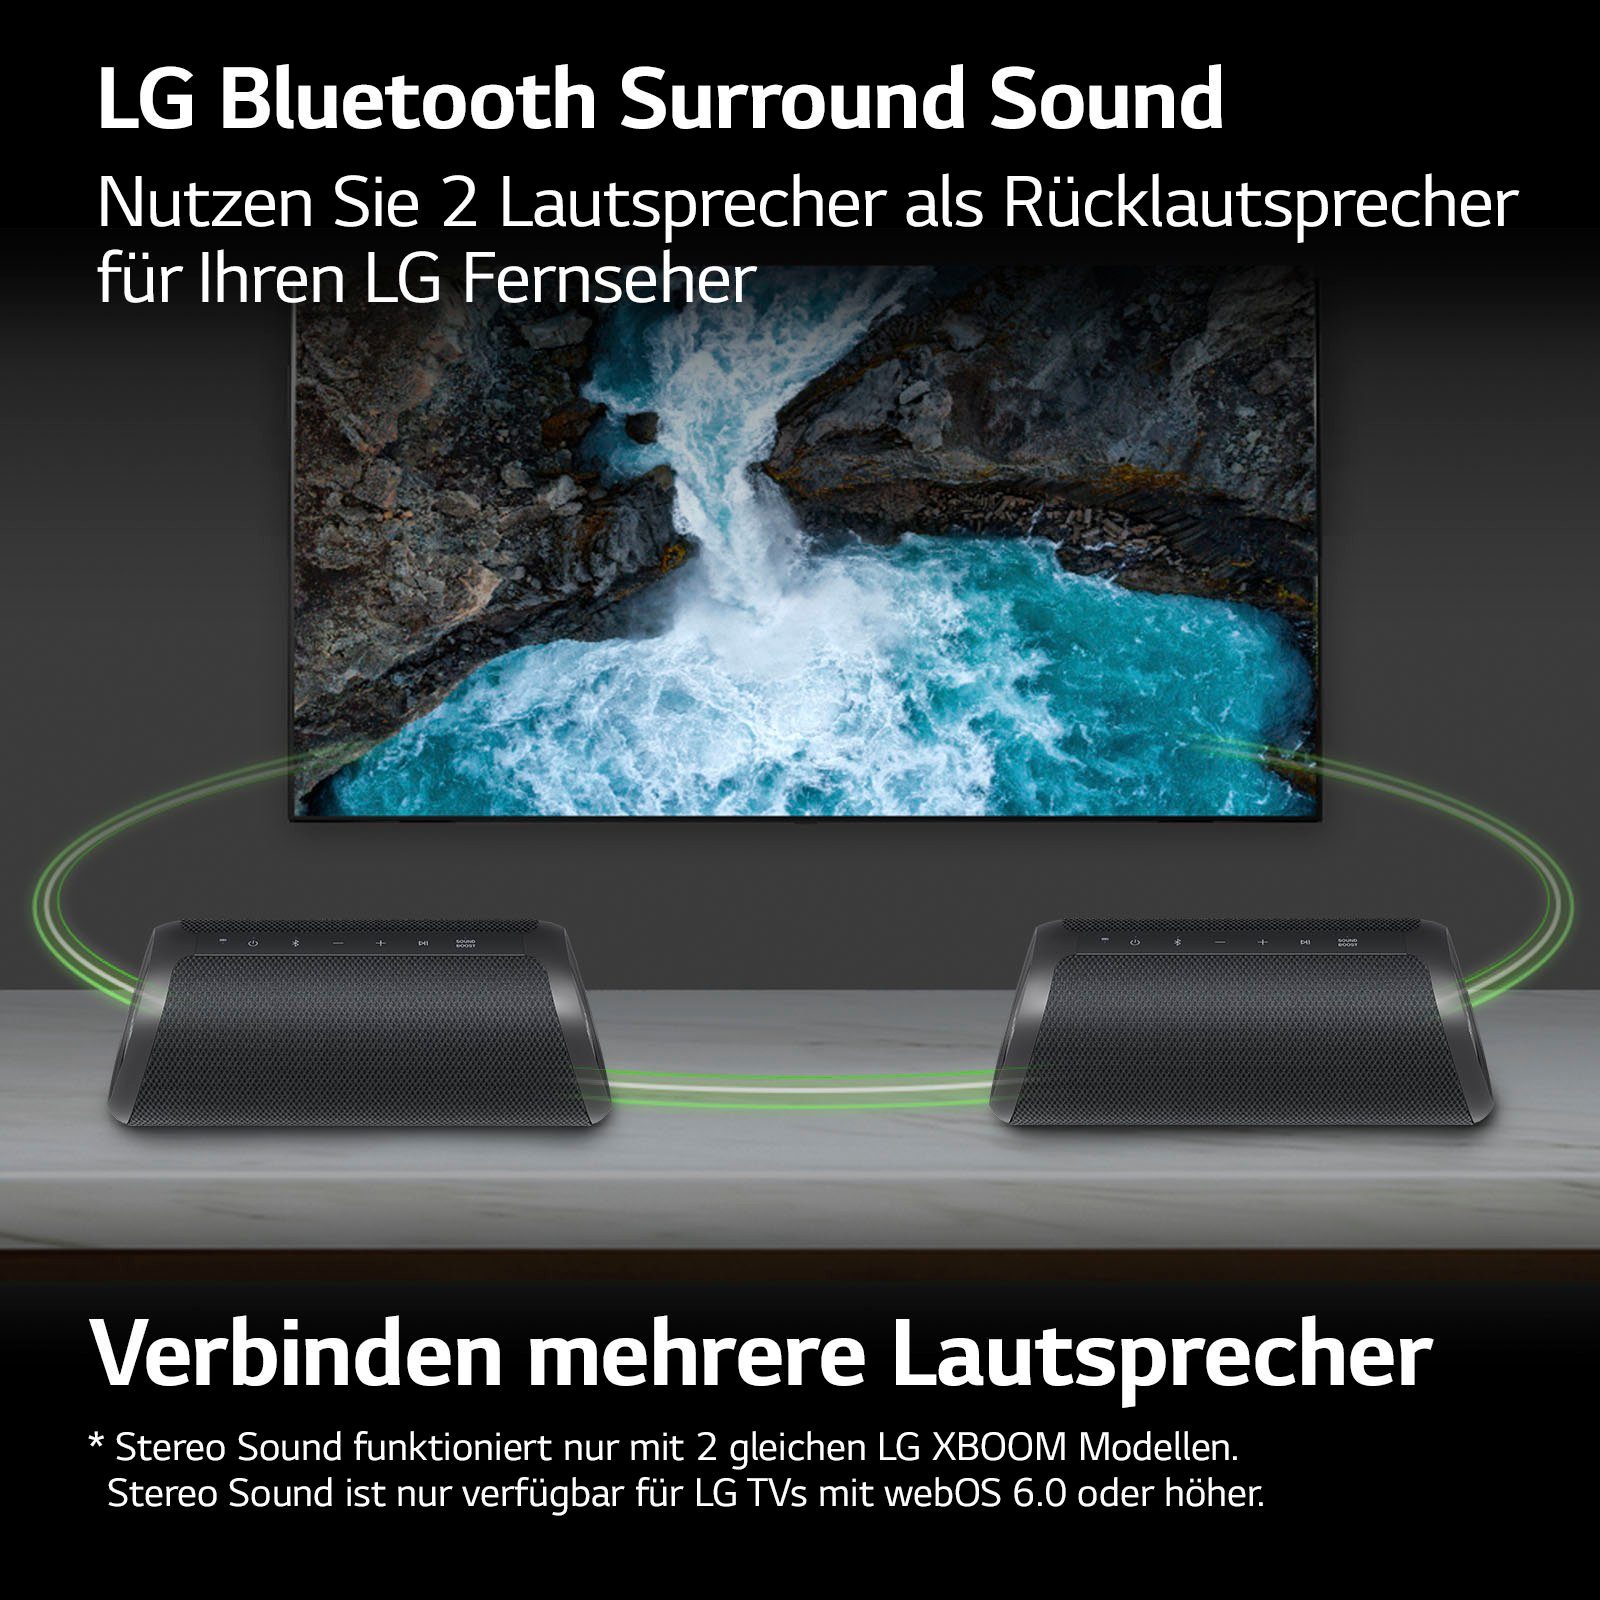 XBOOM 1.0 Lautsprecher W) Go LG DXG7 (Bluetooth, schwarz 40